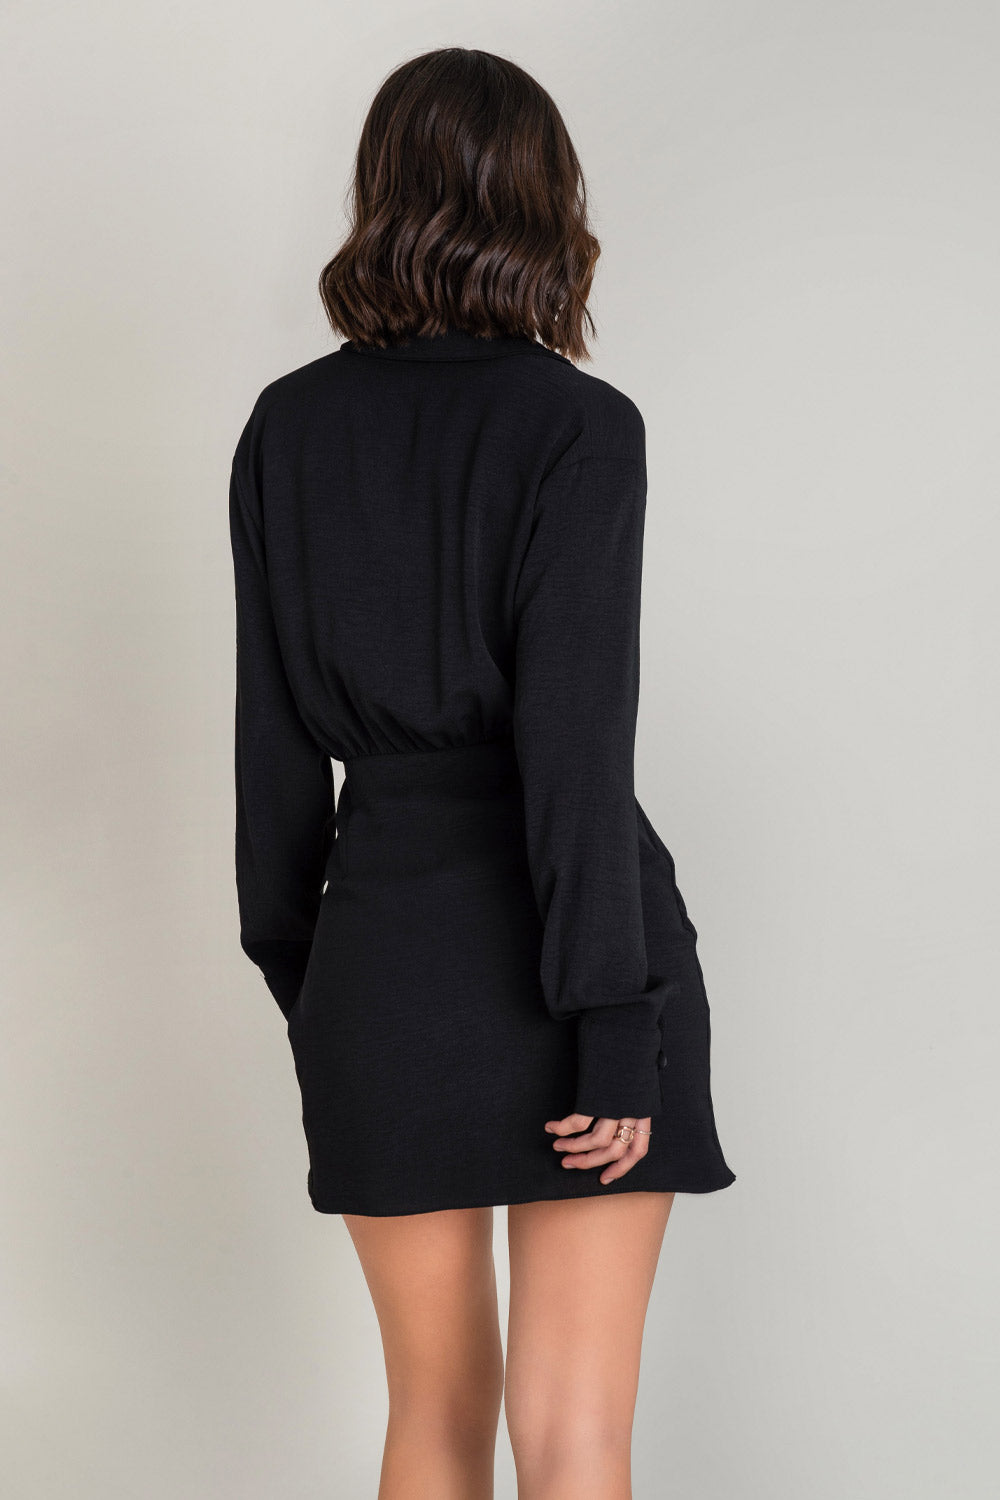 Vestido manga larga escote en V ajuste en cintura color negro para mujer